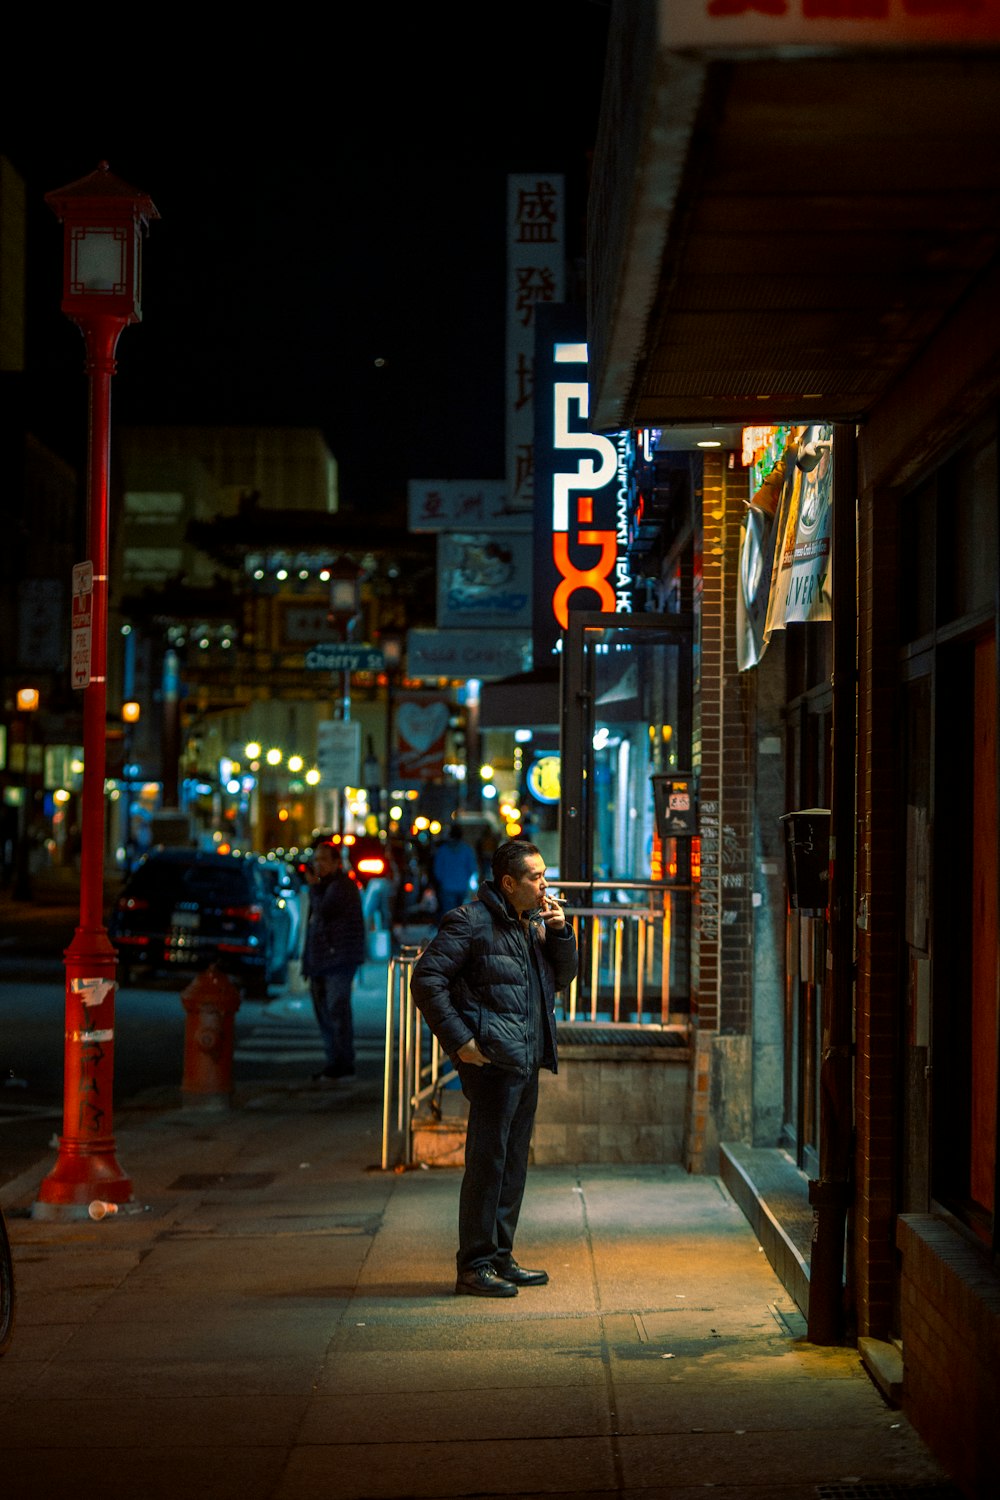 man in black jacket walking on sidewalk during night time